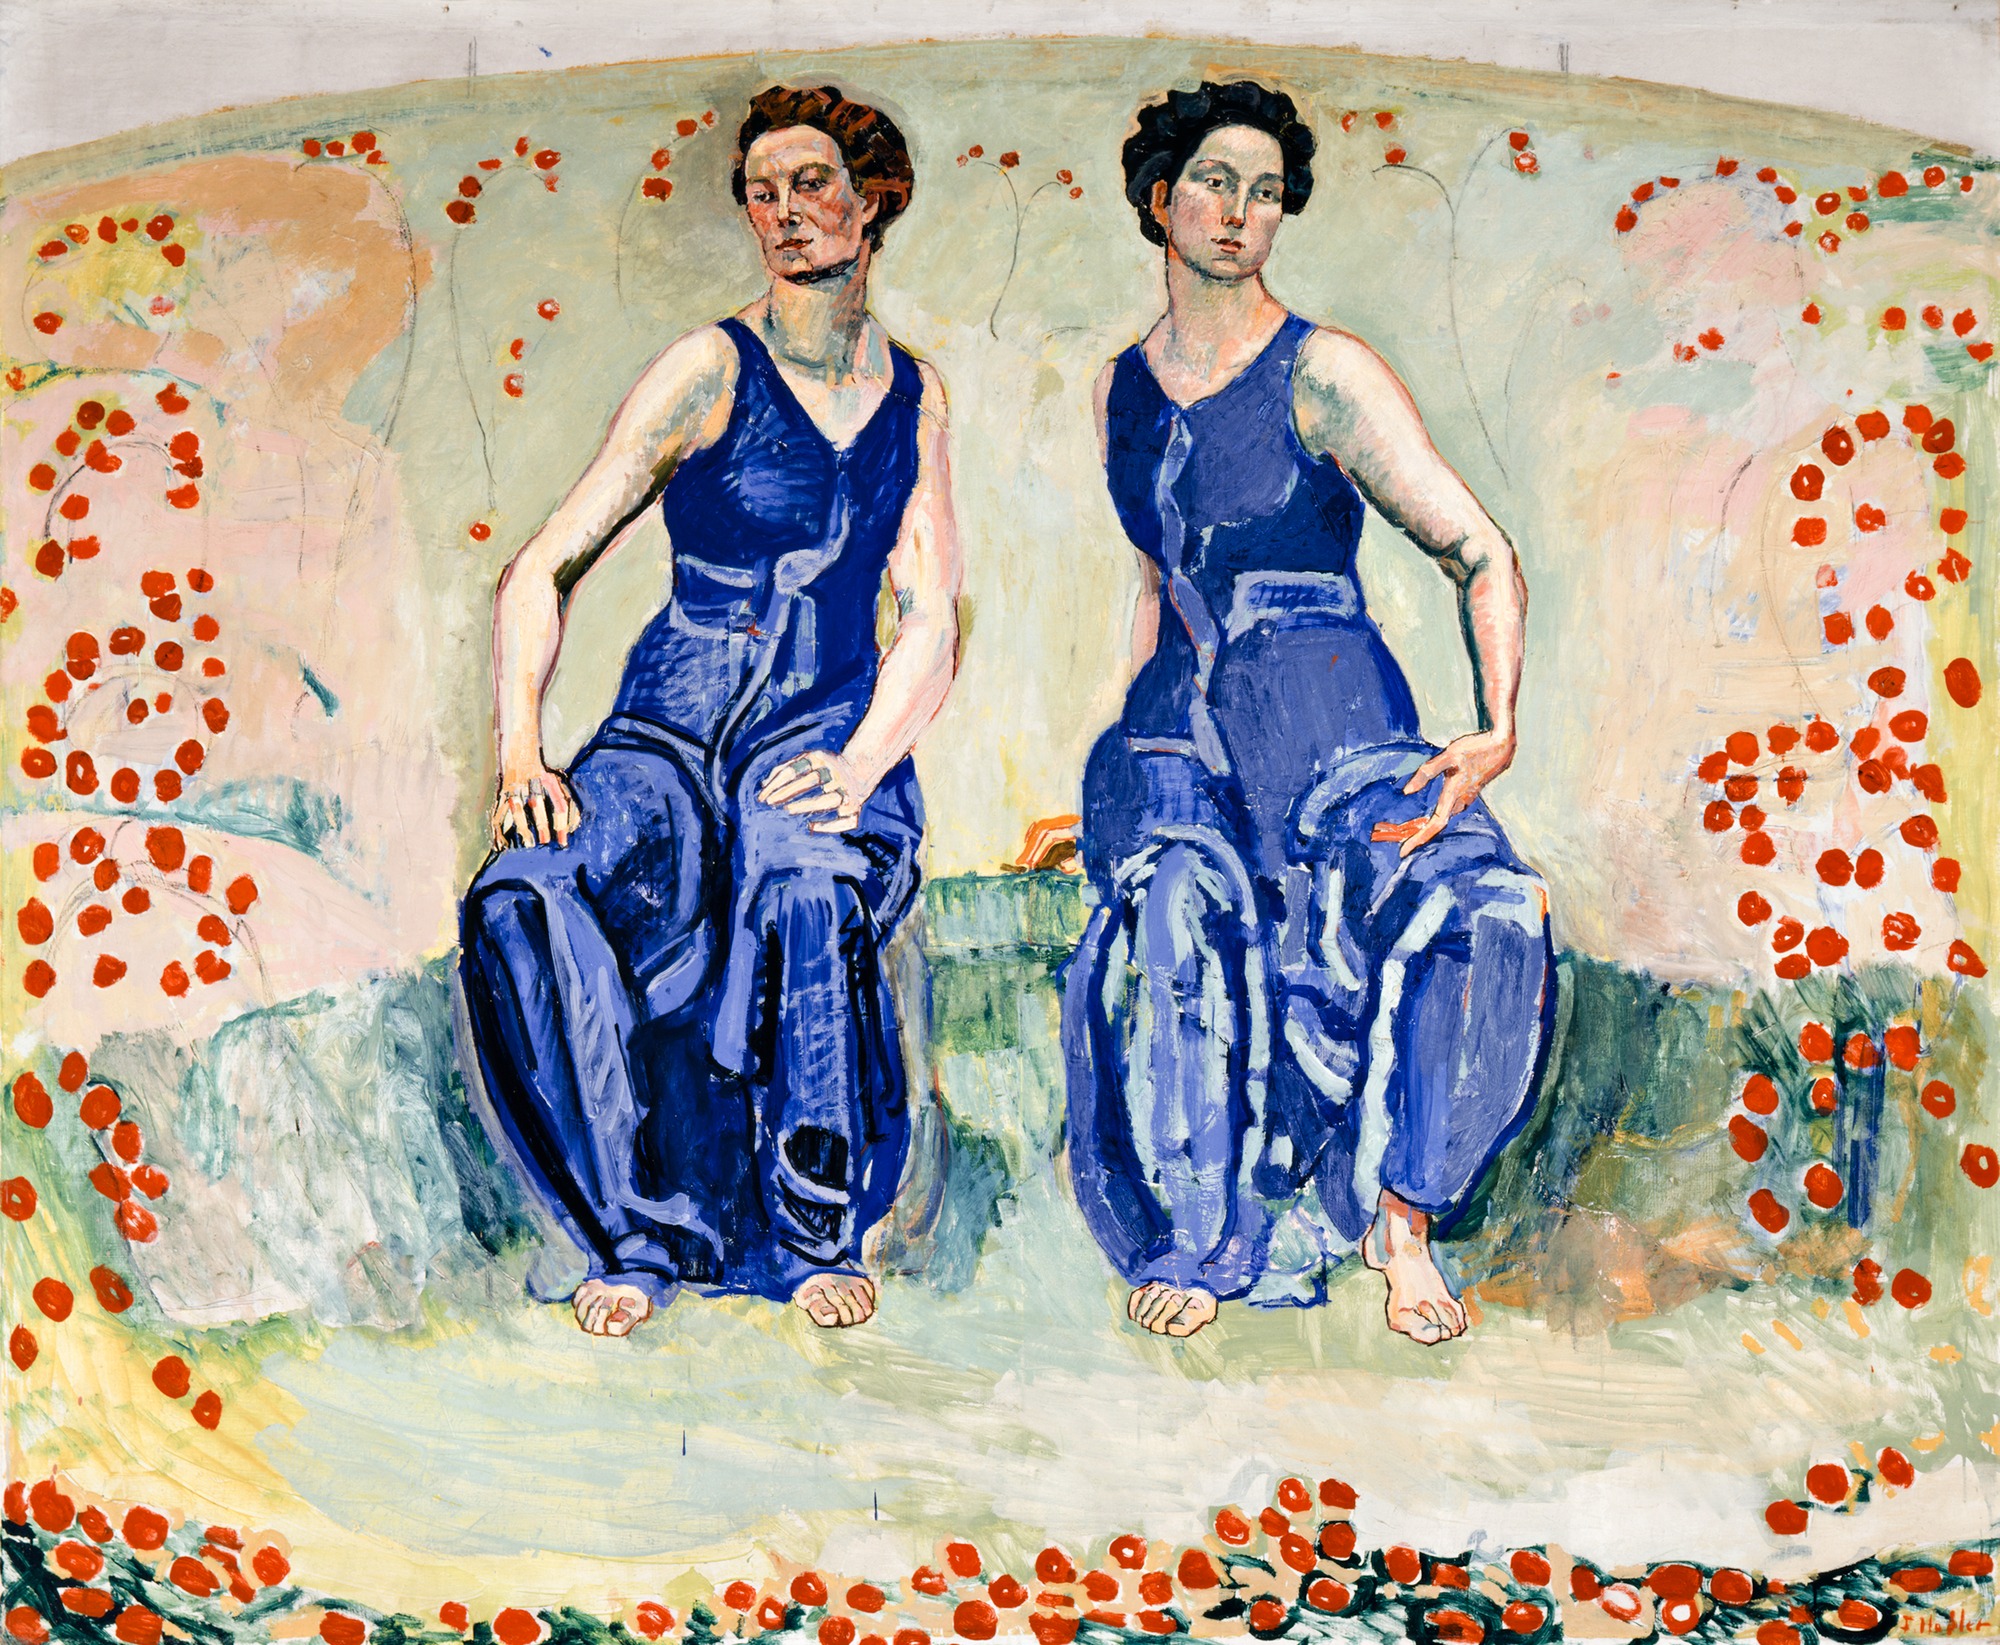 Święta Godzina by Ferdinand Hodler - Ok. 1907 - 1911 - 183 x 226 cm 